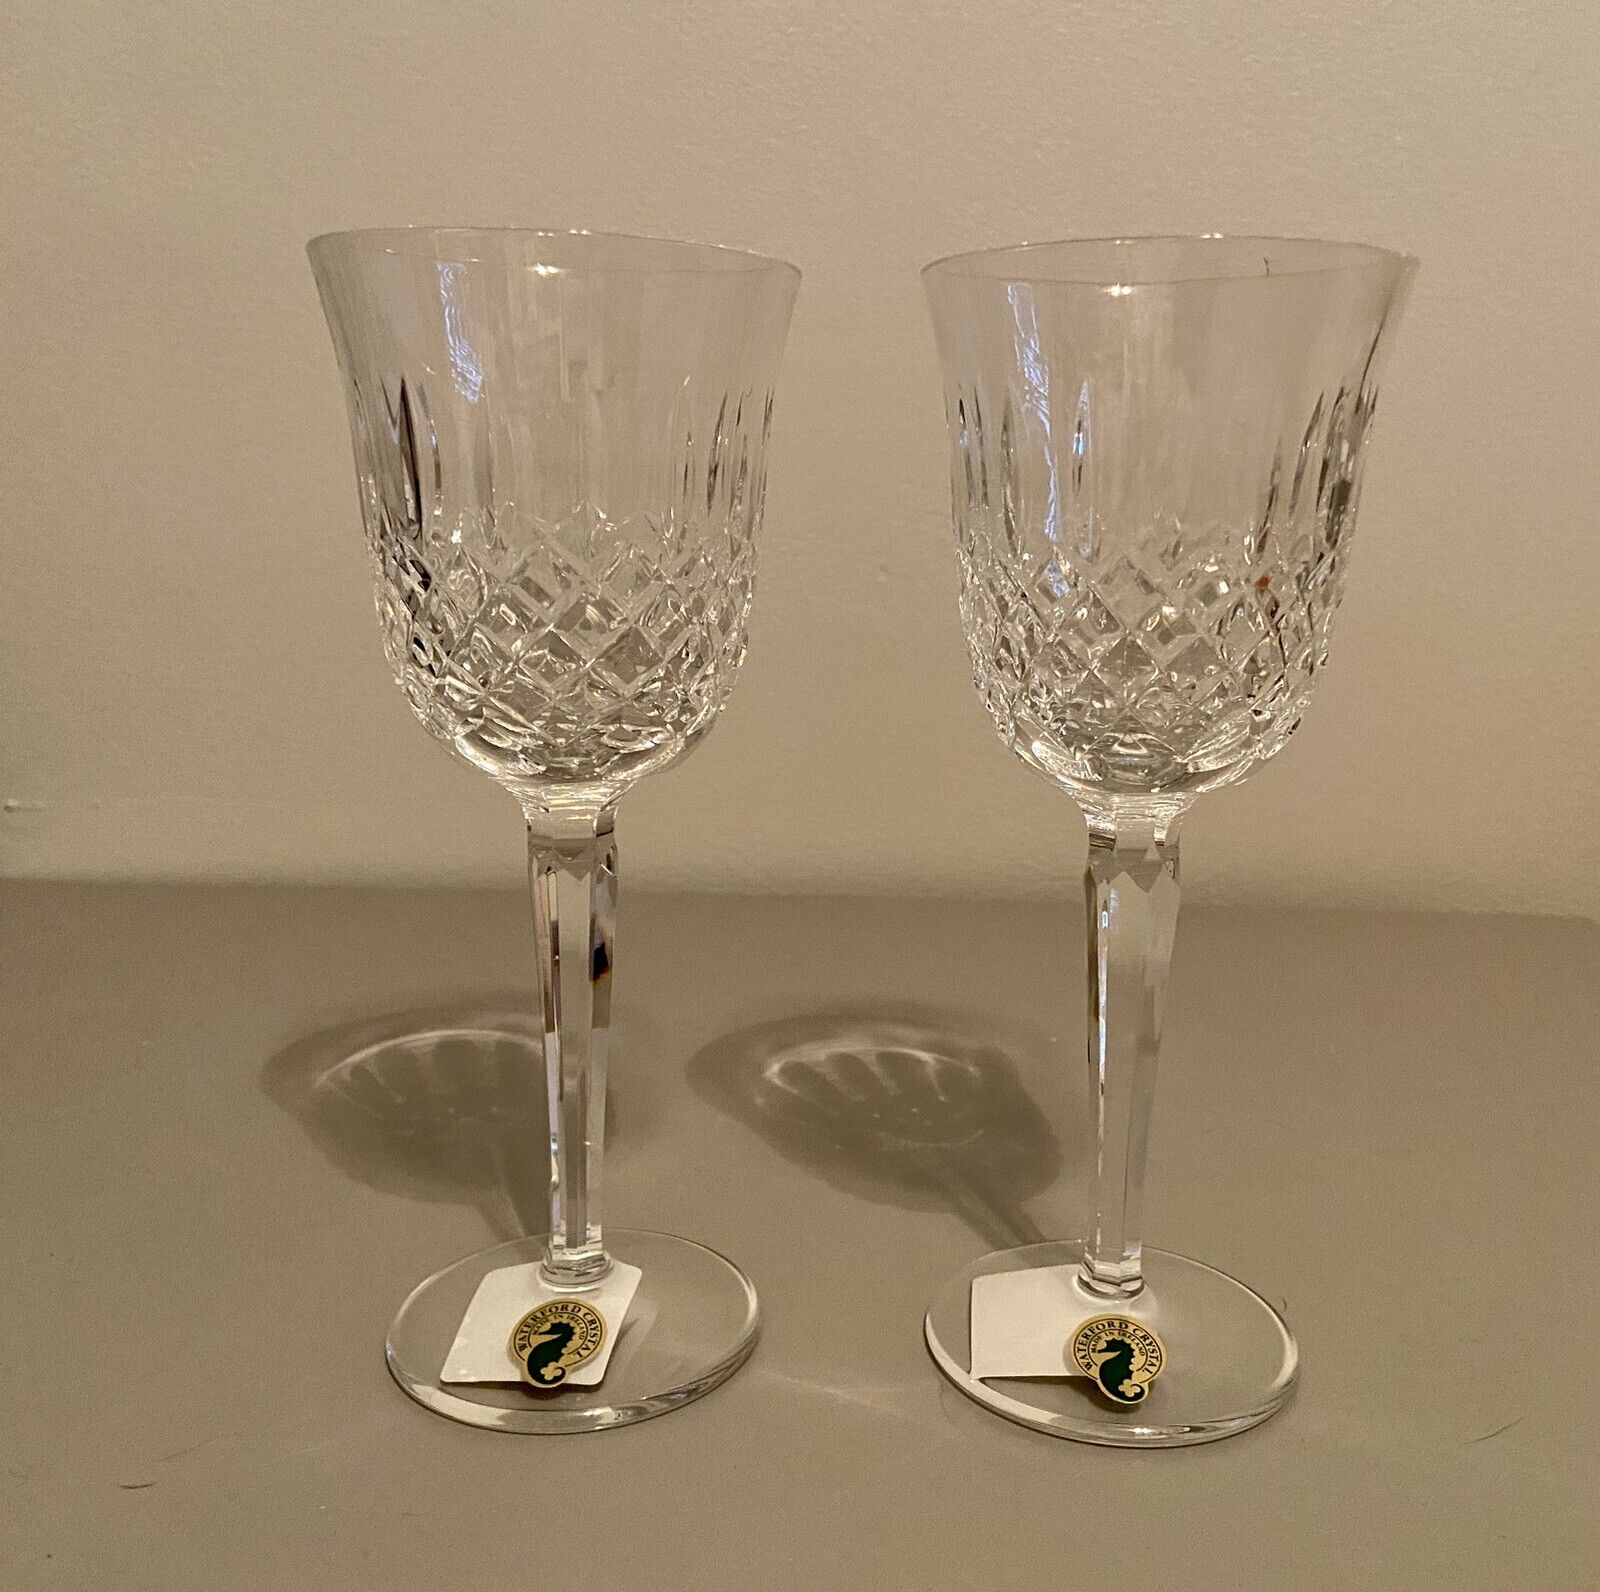 Waterford Crystal Wine Glasses